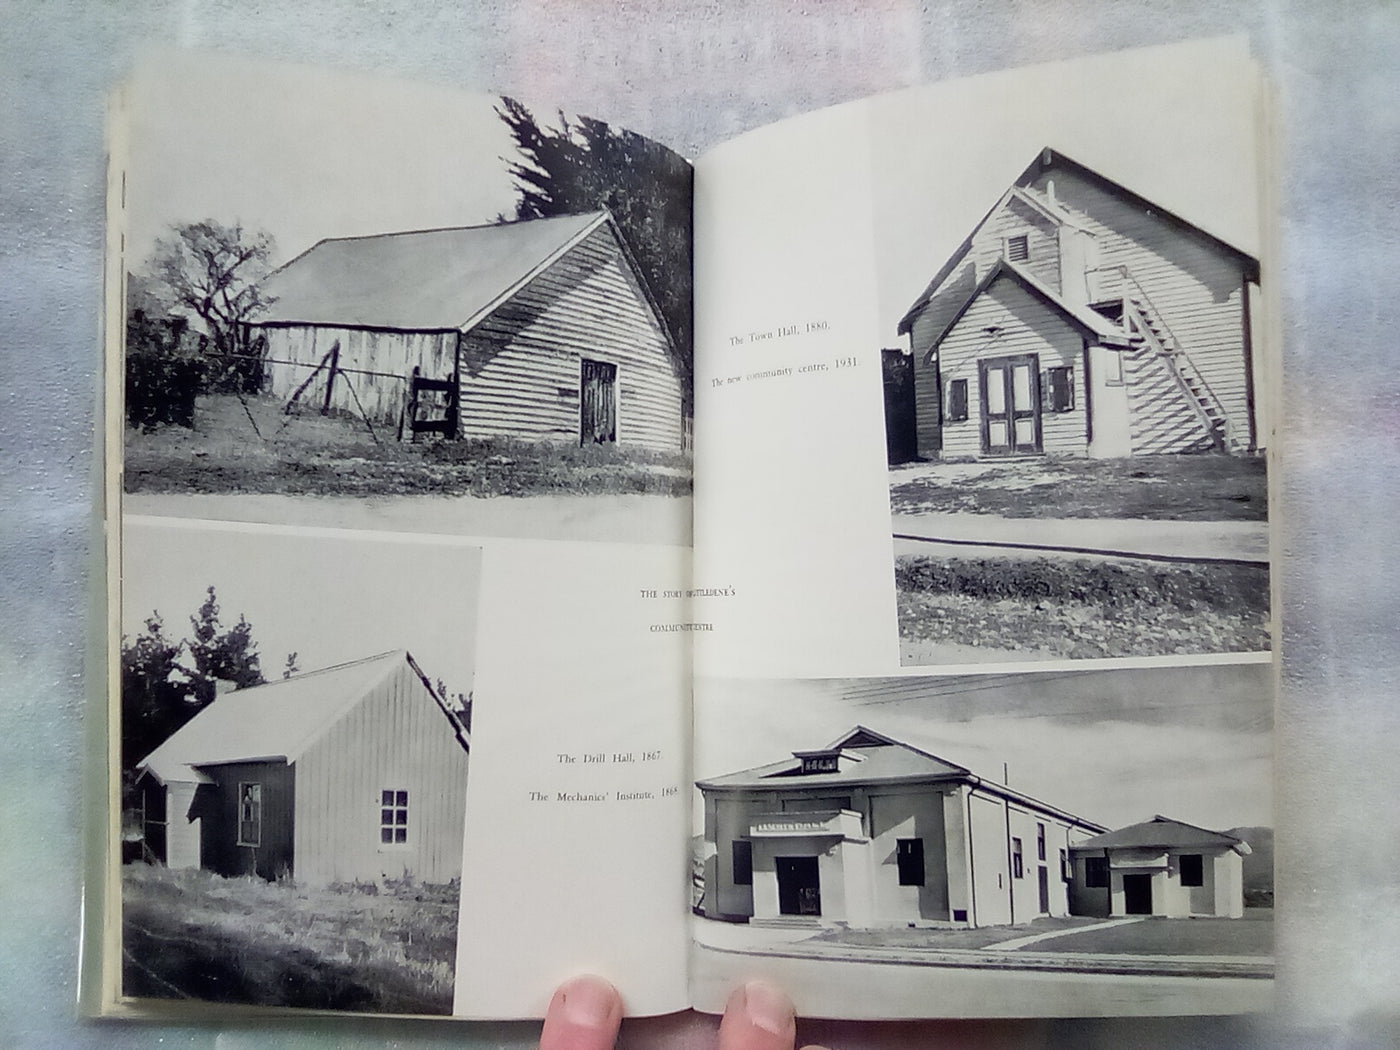 Littledene - A New Zealand Rural Community (1938) by H.C.D. Somerset